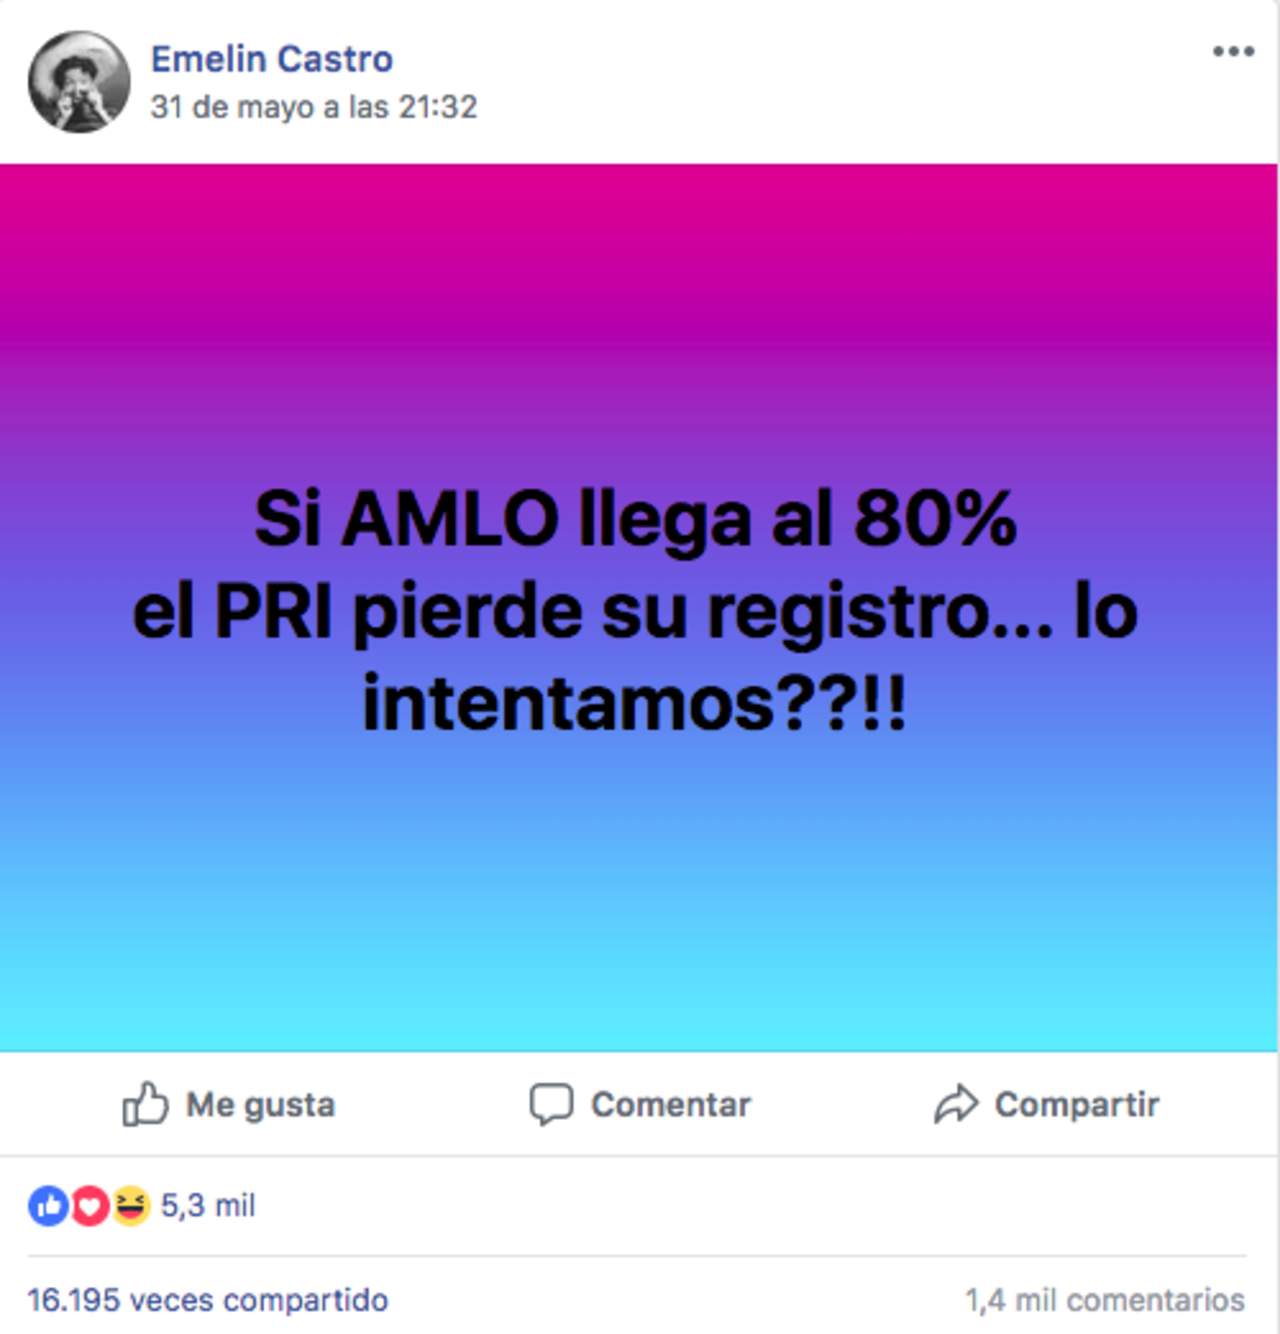 El PRI no perdería su registro si López Obrador obtiene 80% de los votos